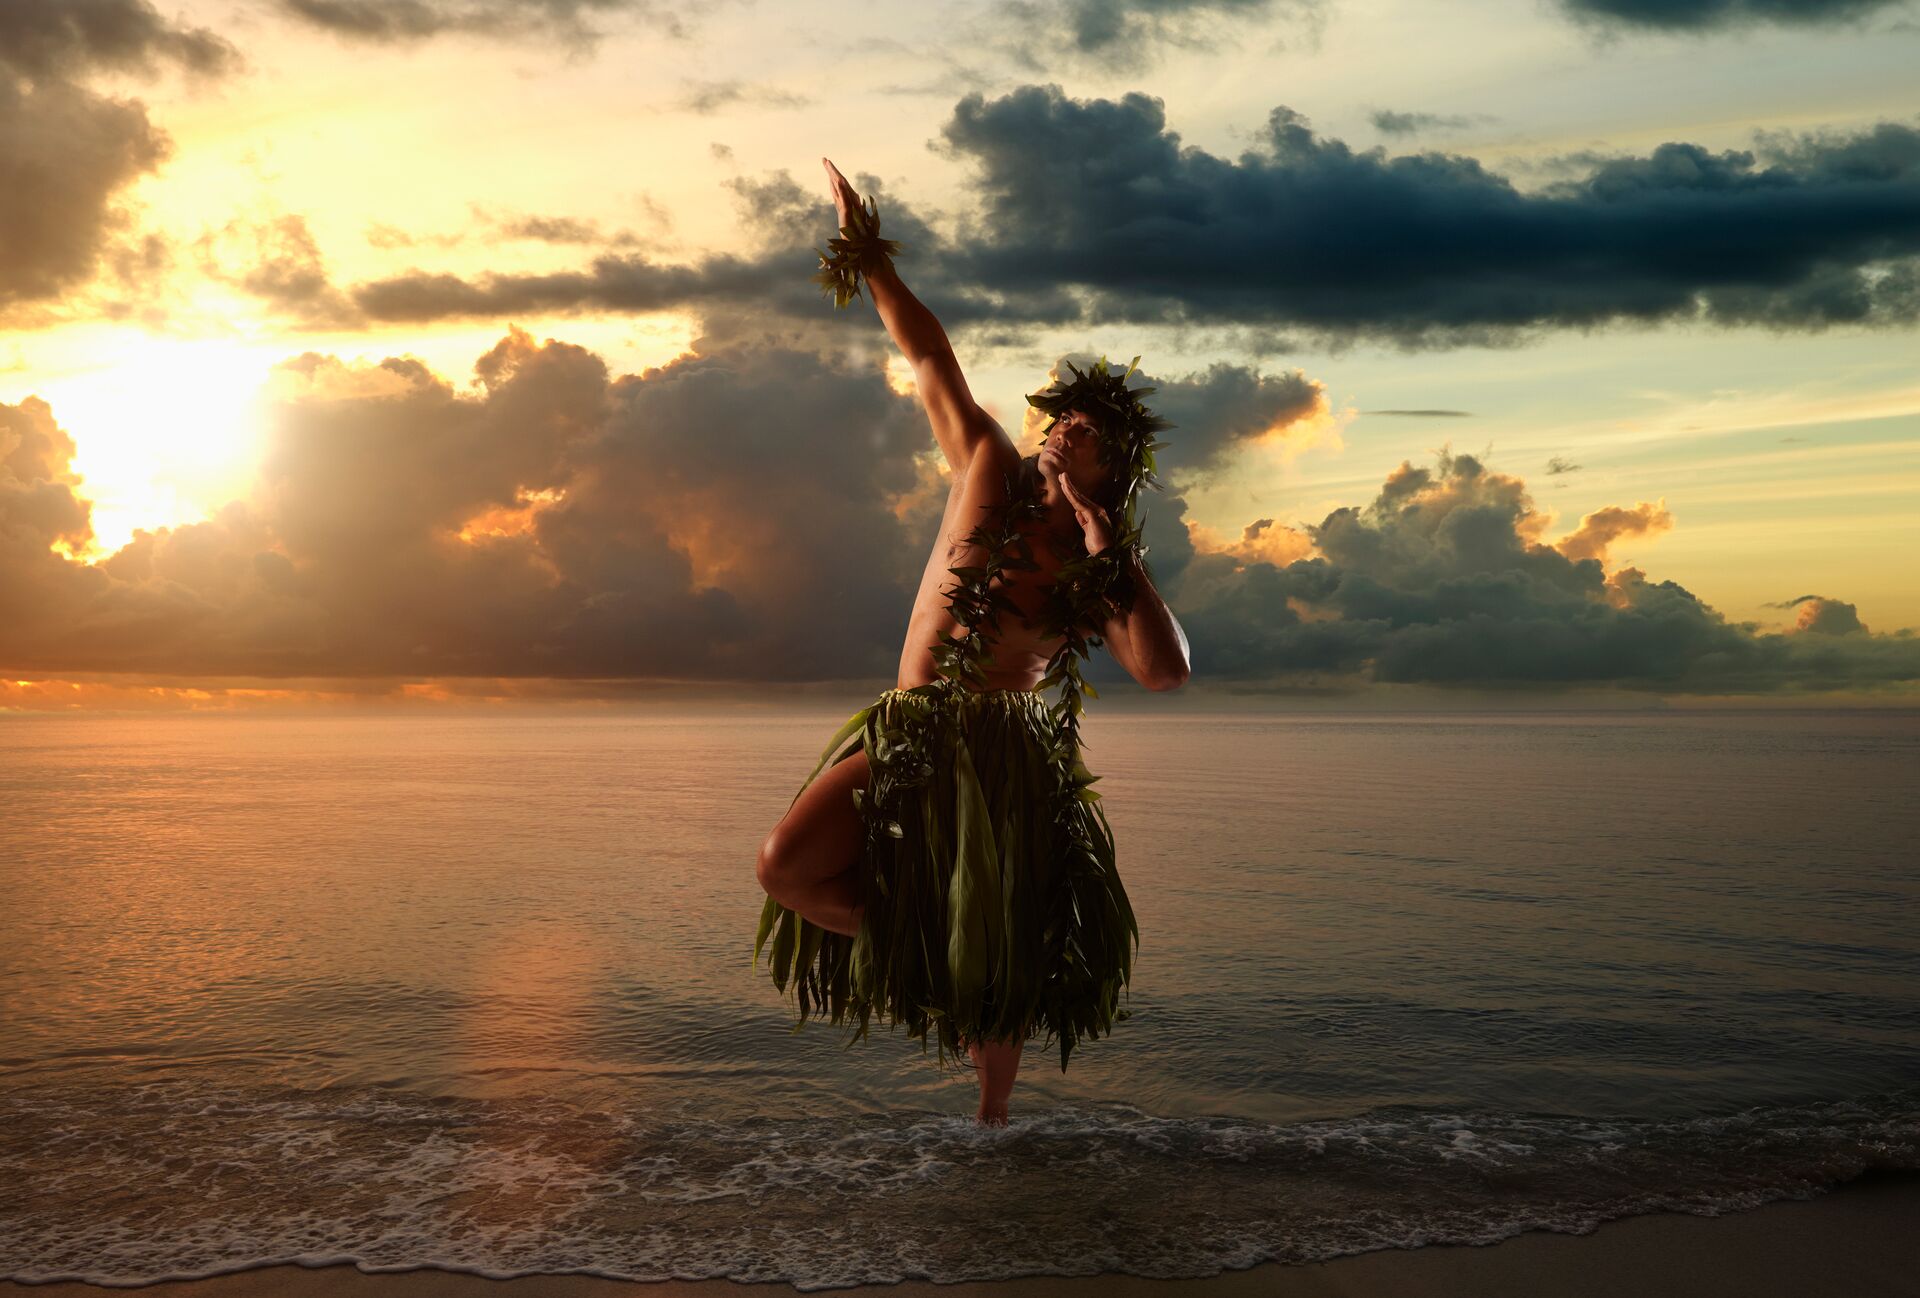 A Hawaiian man dance hula on a beach at sunset wearing traditional grass skirt